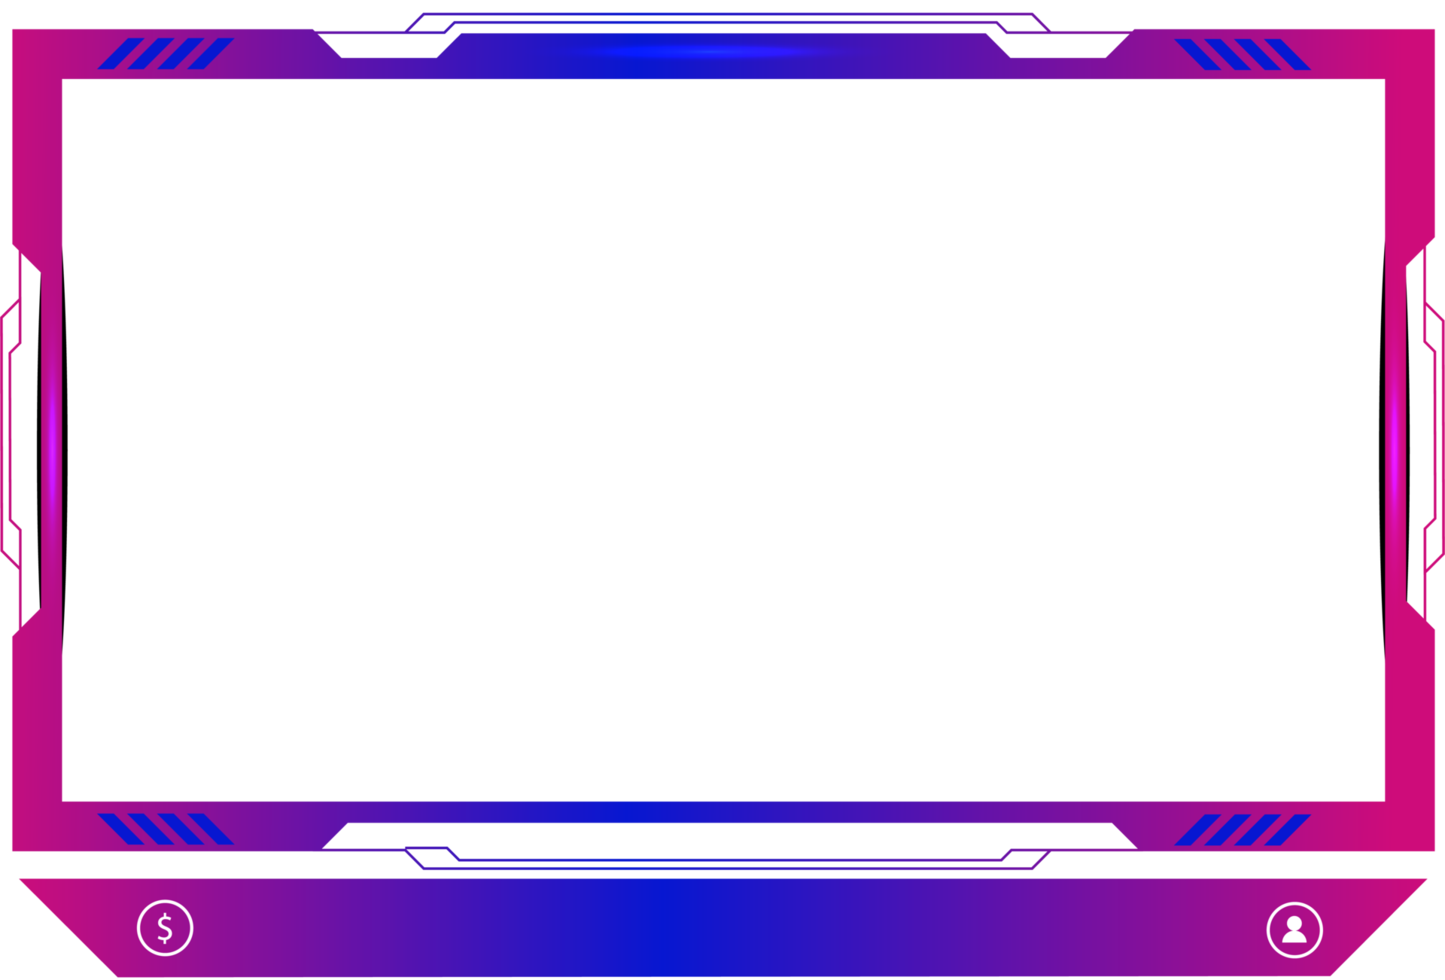 leva strömning täcka över dekoration med flickaktigt rosa och blå Färg skugga. uppkopplad gaming skärm panel och gräns design för spelare. leva utsända element png med färgrik knappar.